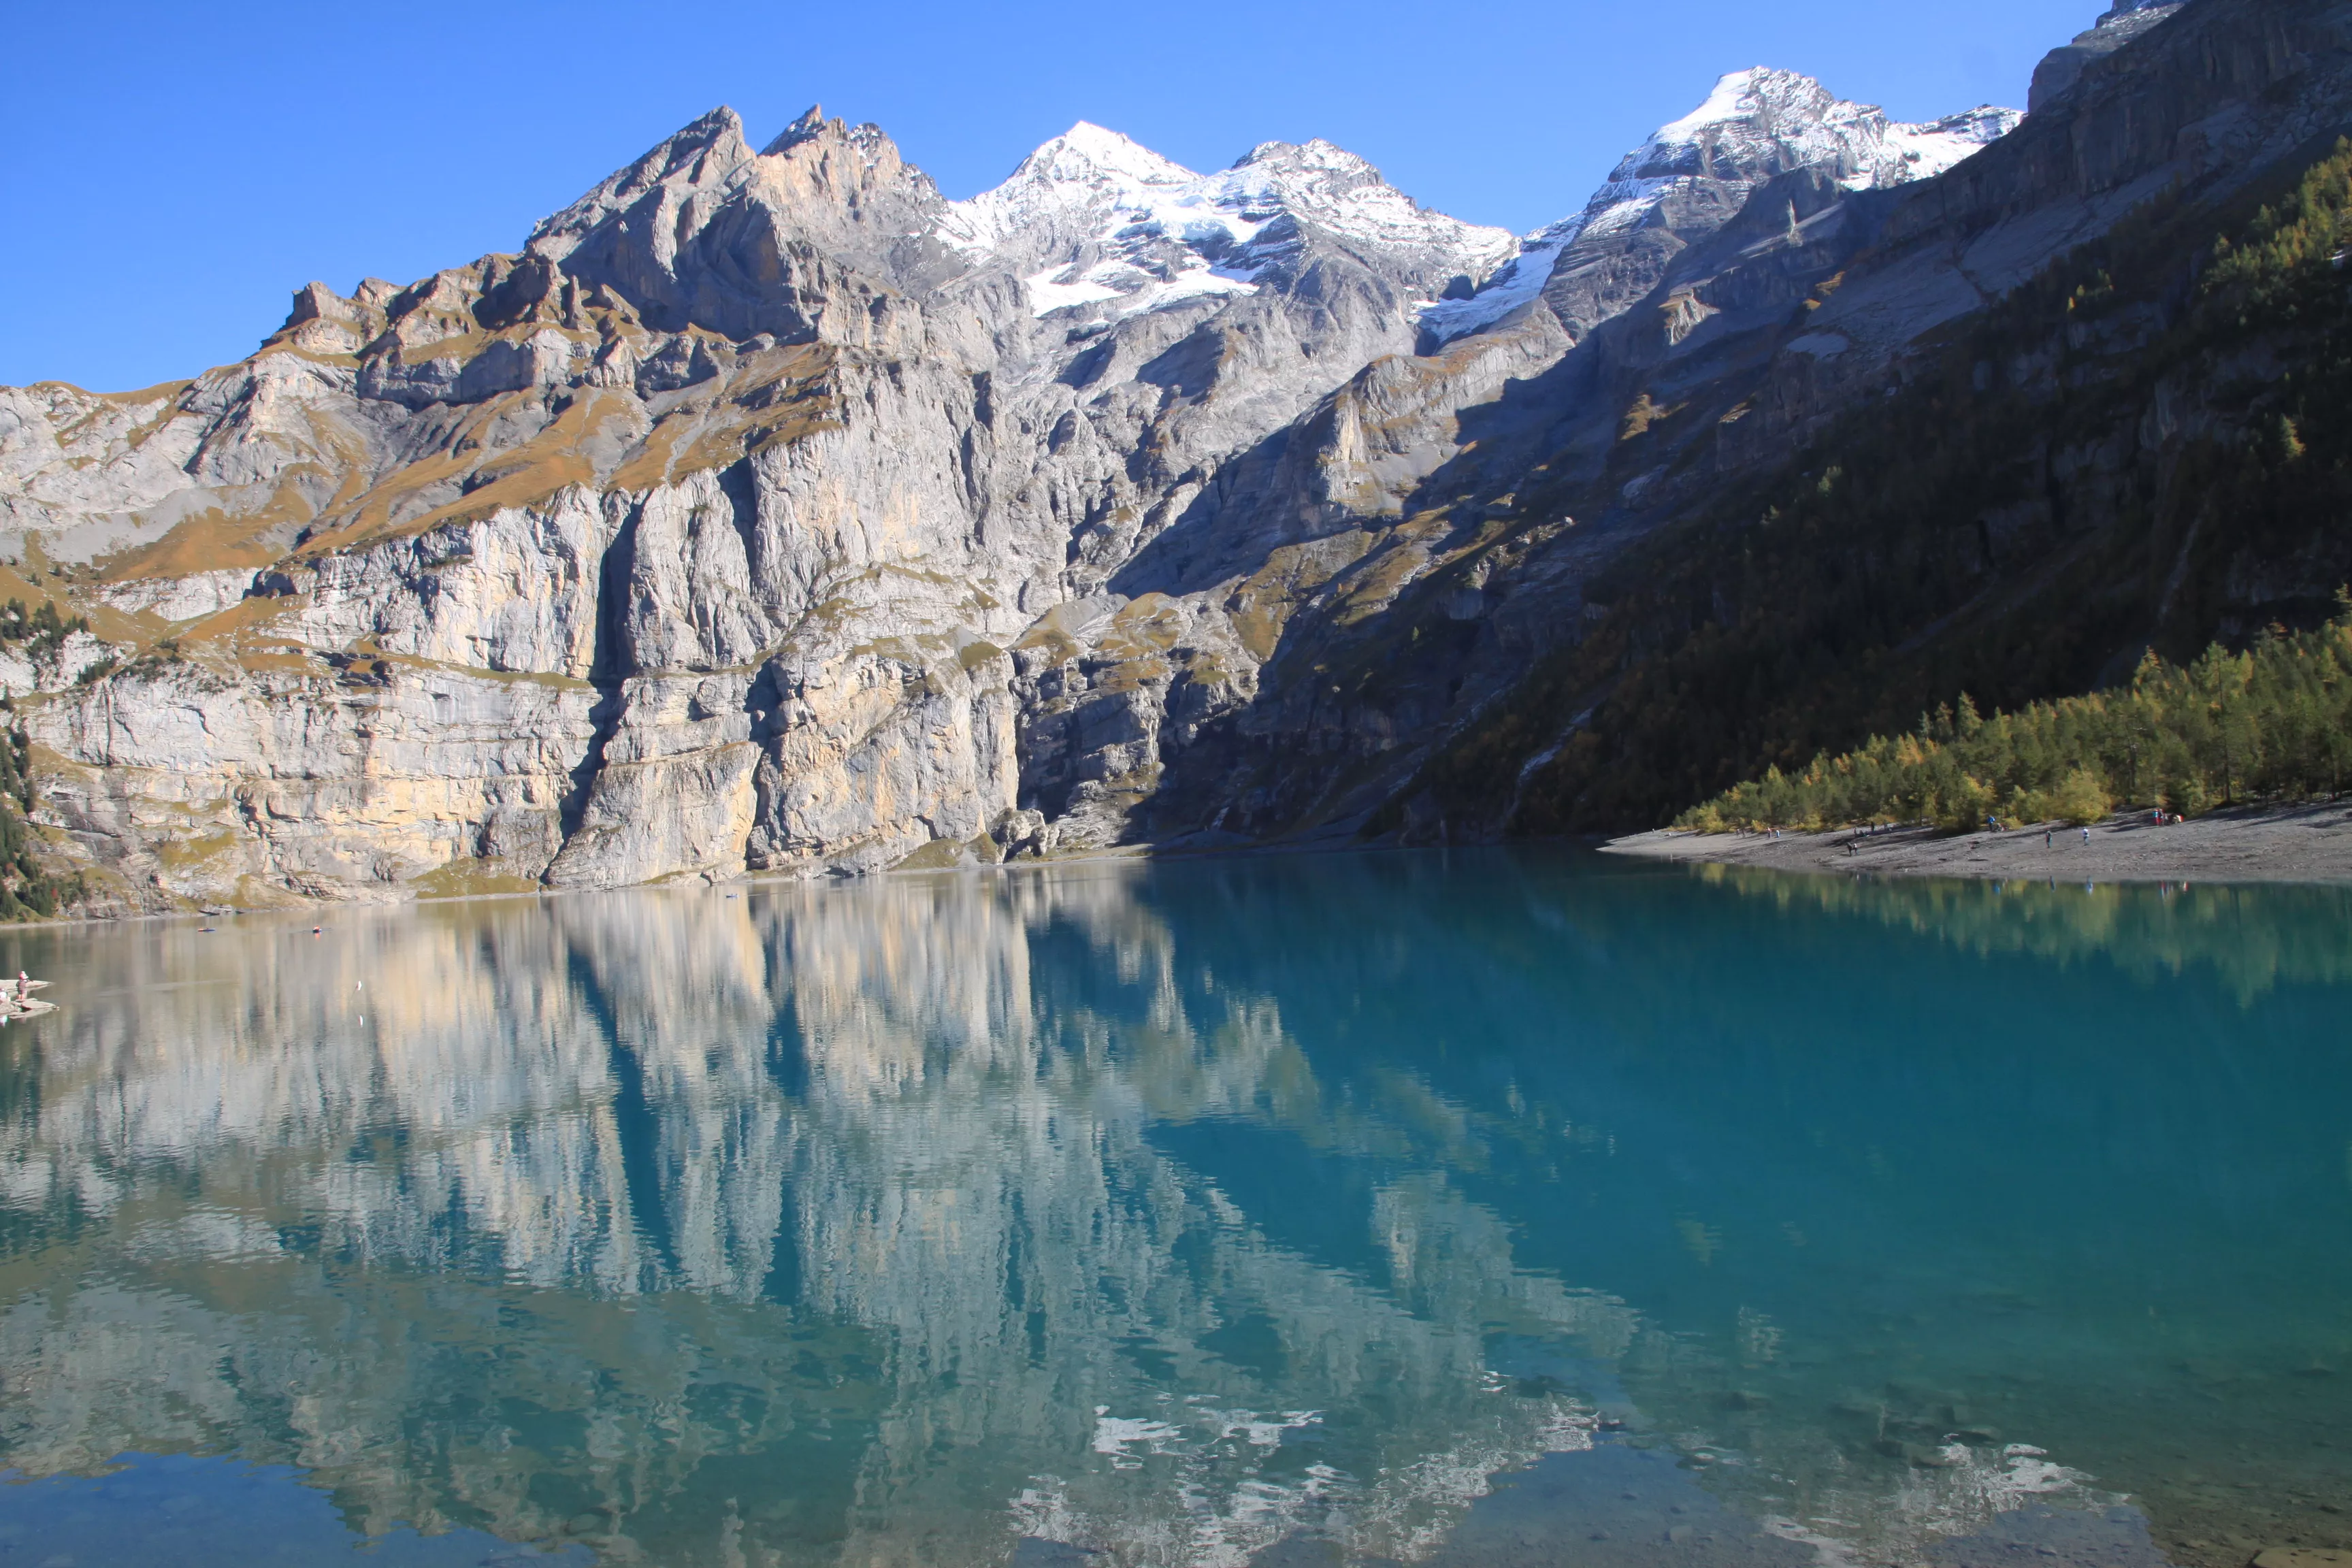 Oeschinensee in Switzerland, Europe | Lakes,Trekking & Hiking - Rated 4